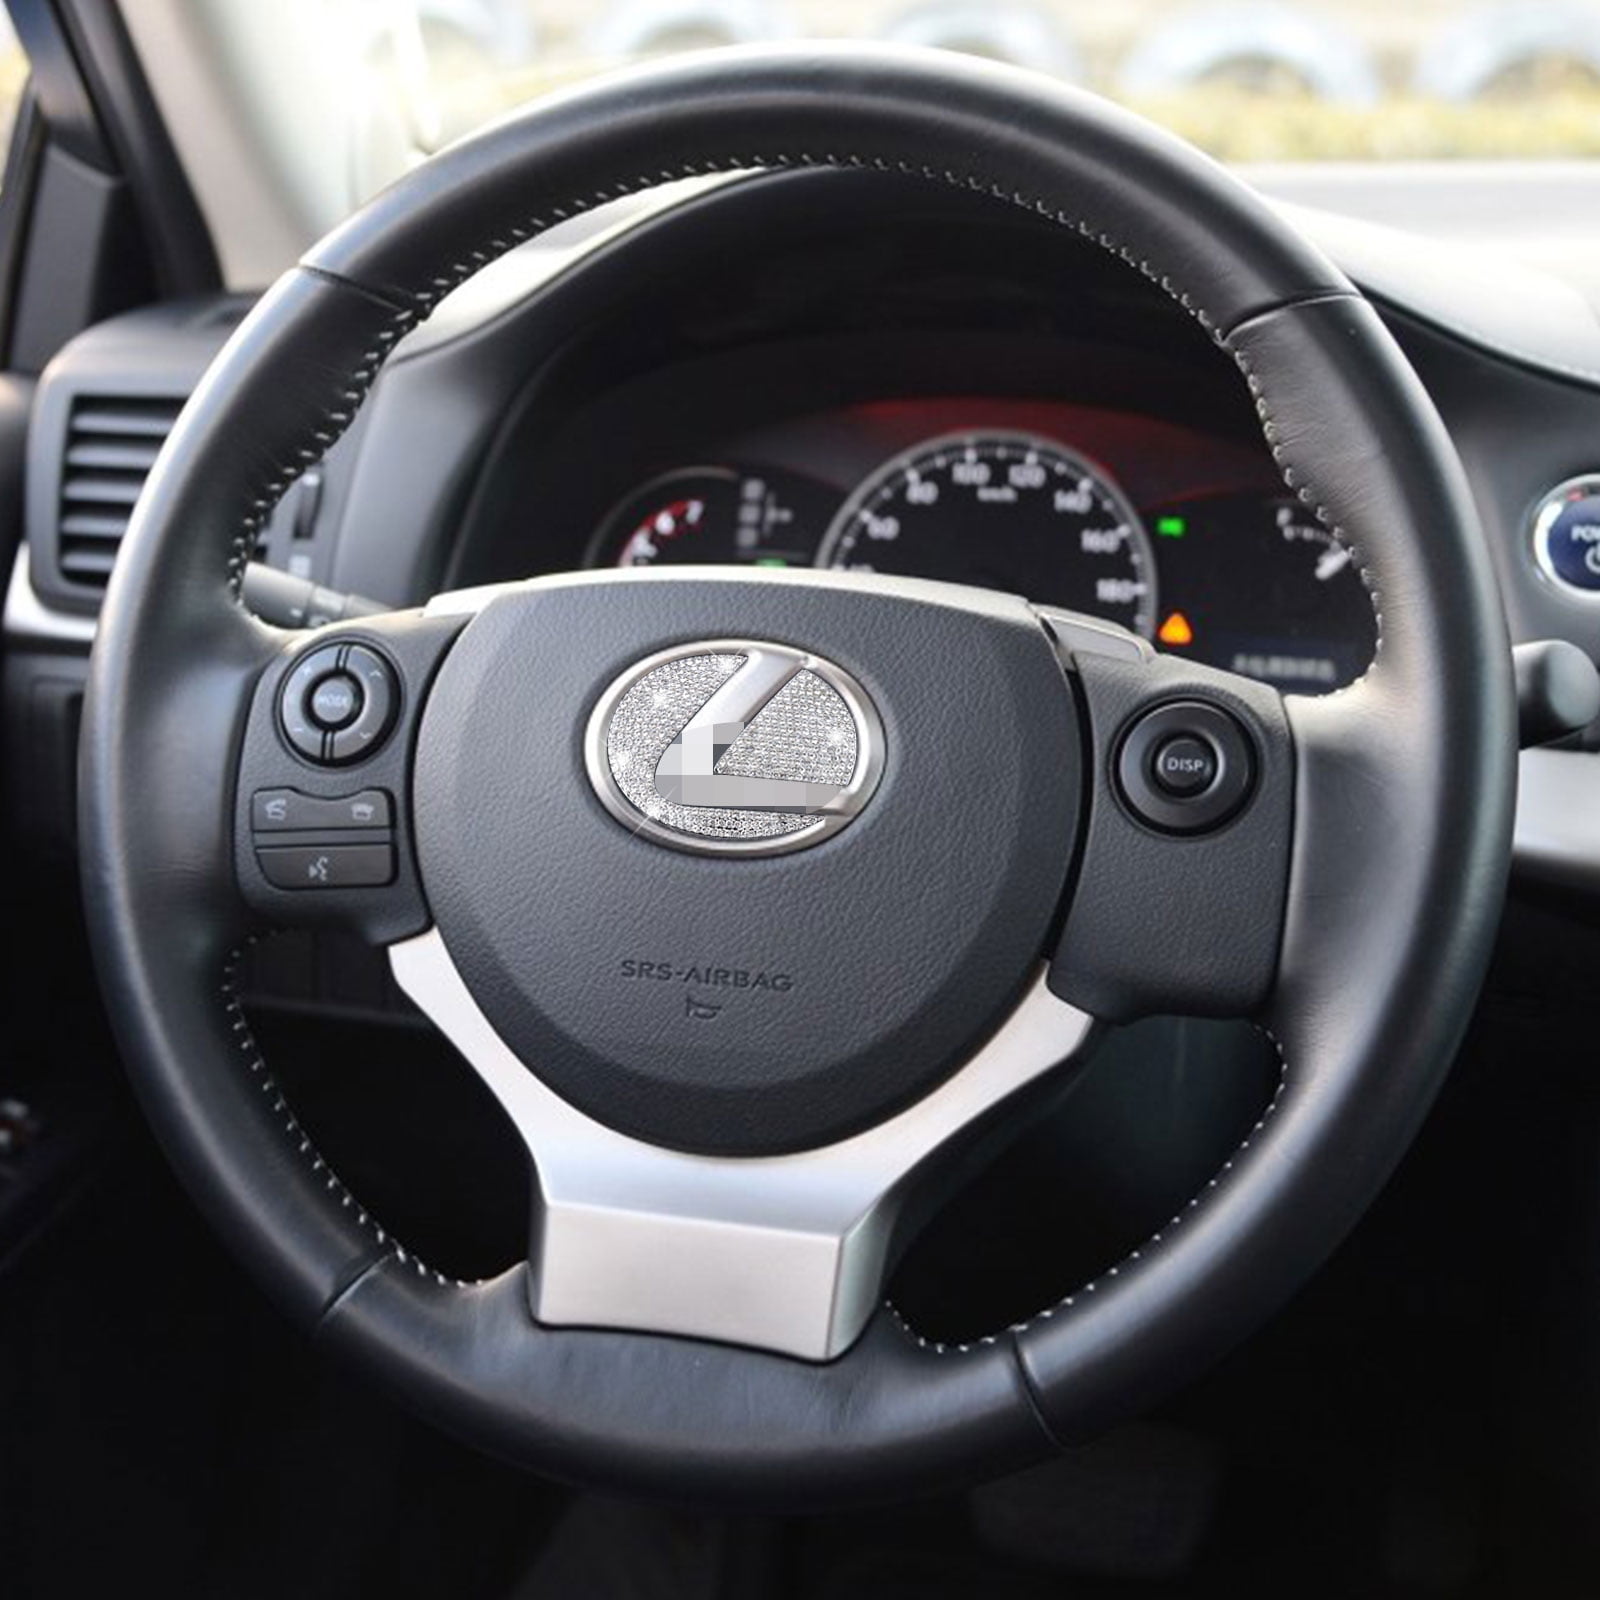 VDARK Bling Autocollant décoratif intérieur de voiture en métal - Pour  Mercedes Benz - Accessoire de décoration de voiture (Steering Wheel Decor)